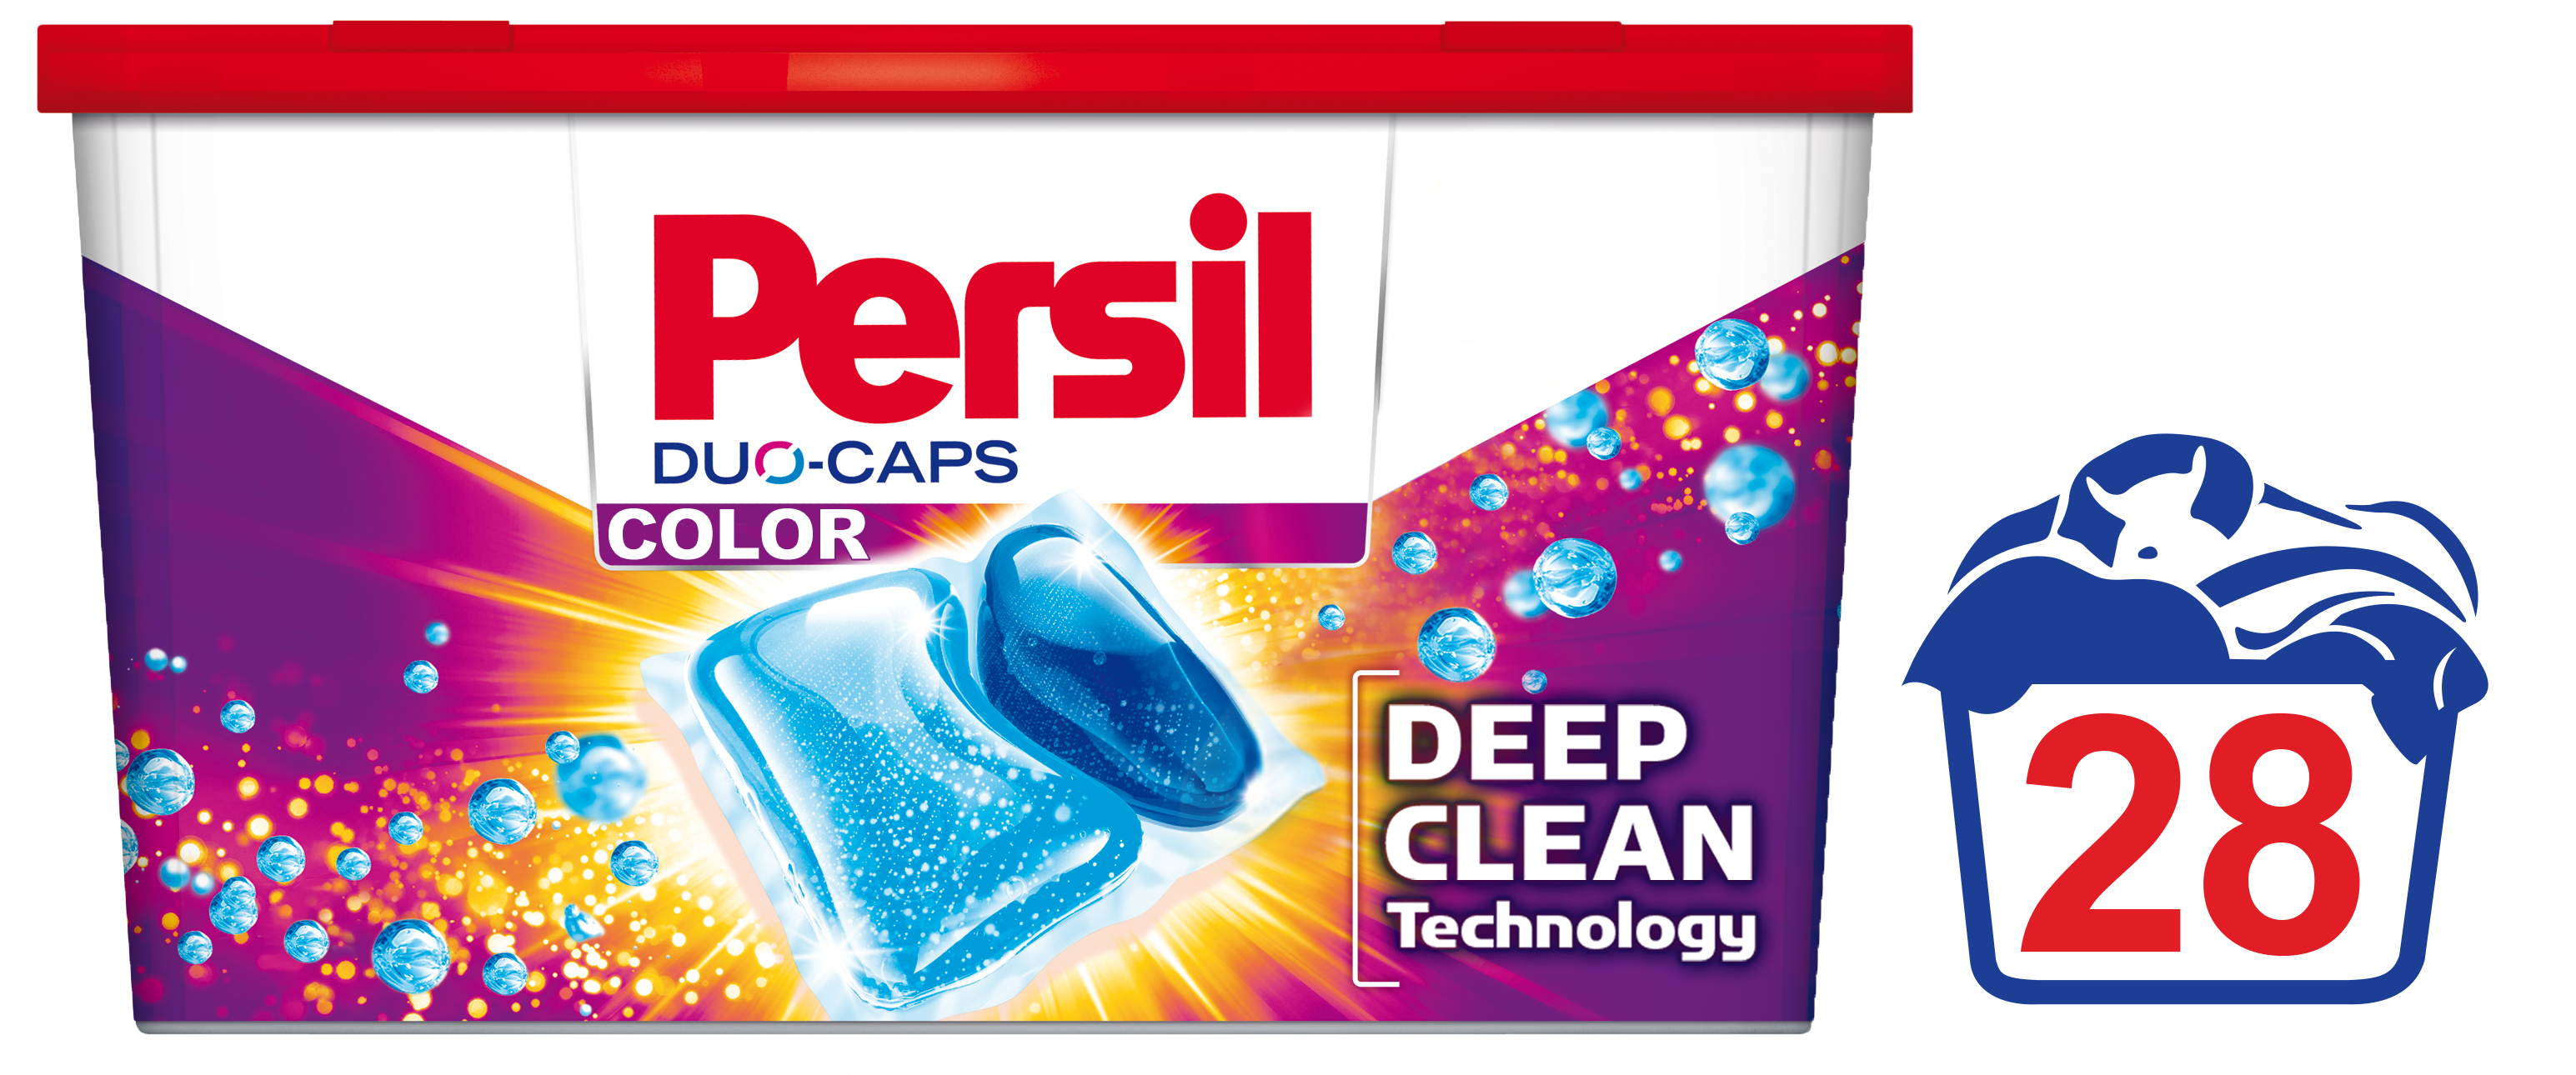 Дуо-капсули для прання Persil Color, 28 шт. (737016) - фото 2